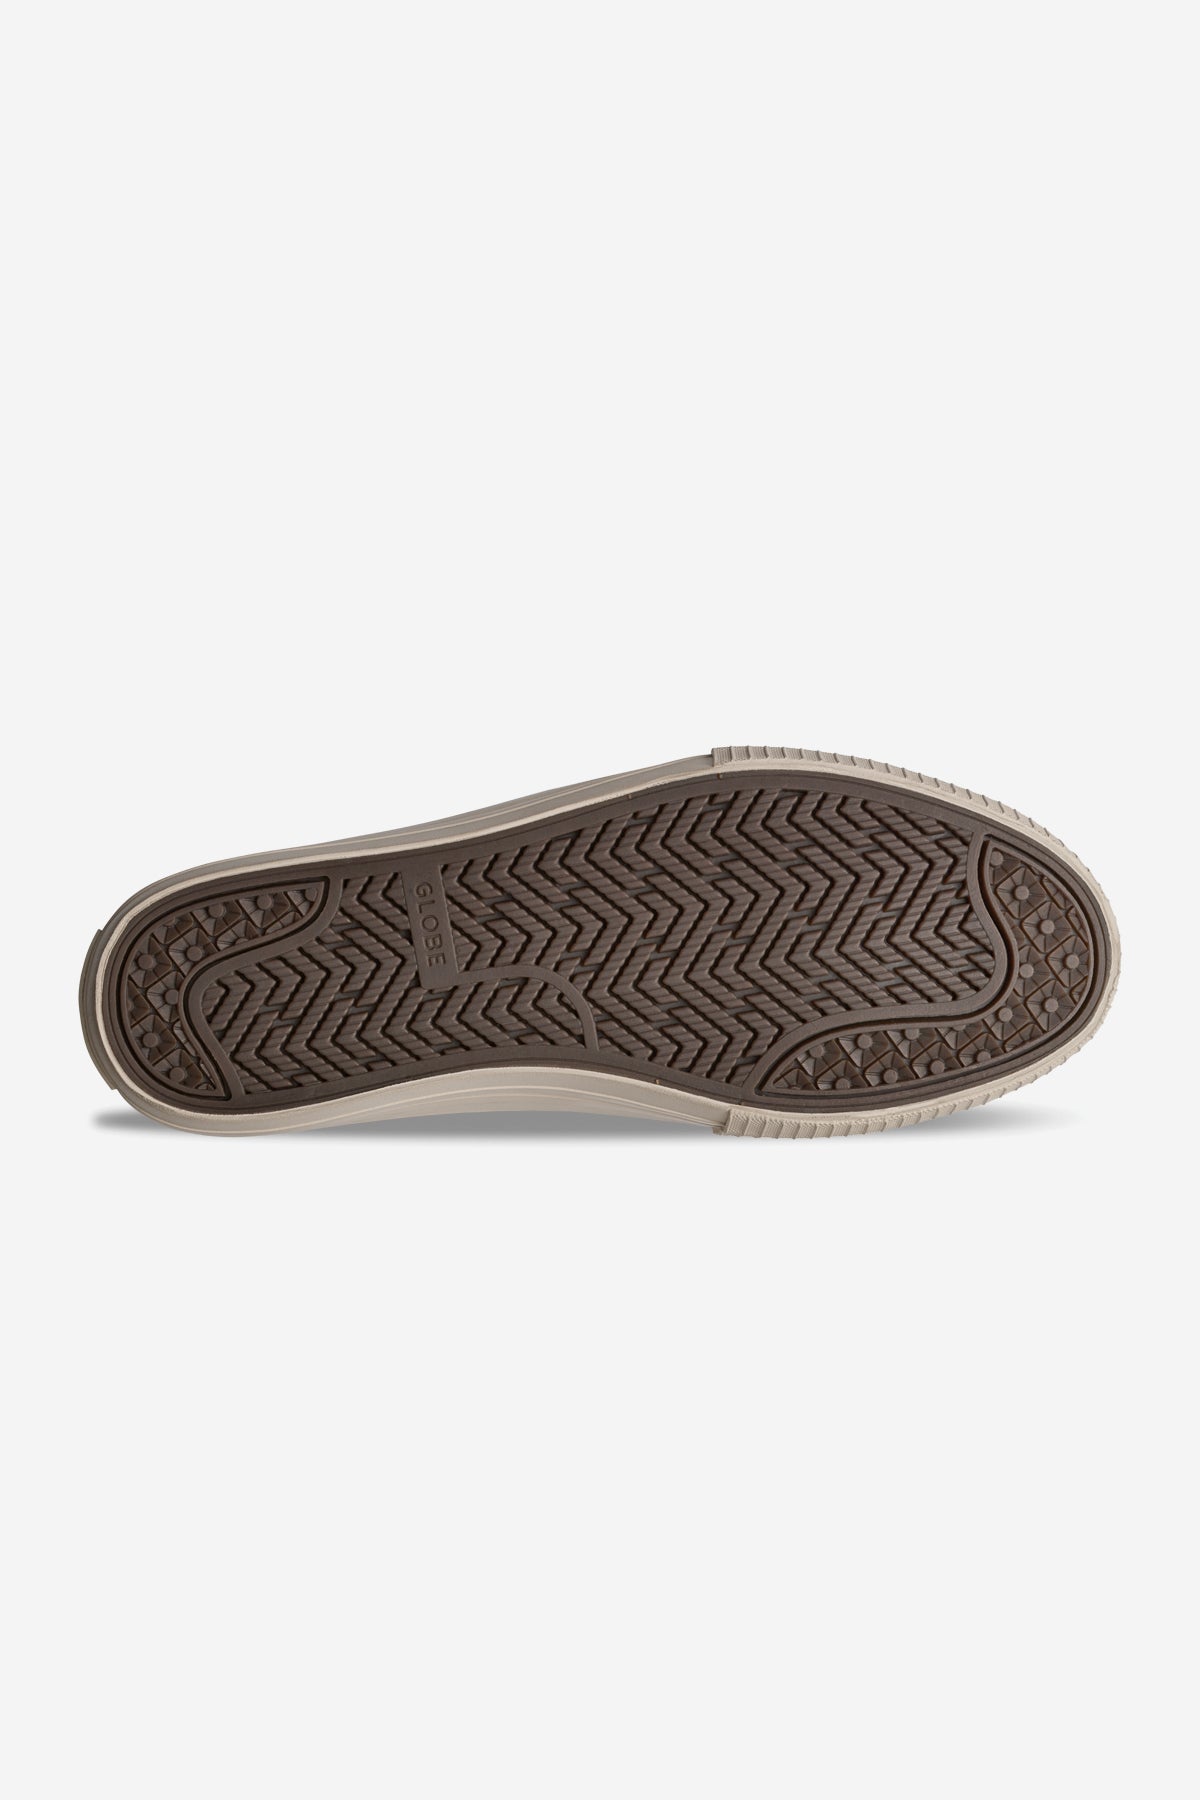 Globe - Gillette - Olive/Crème - skateboard Chaussures